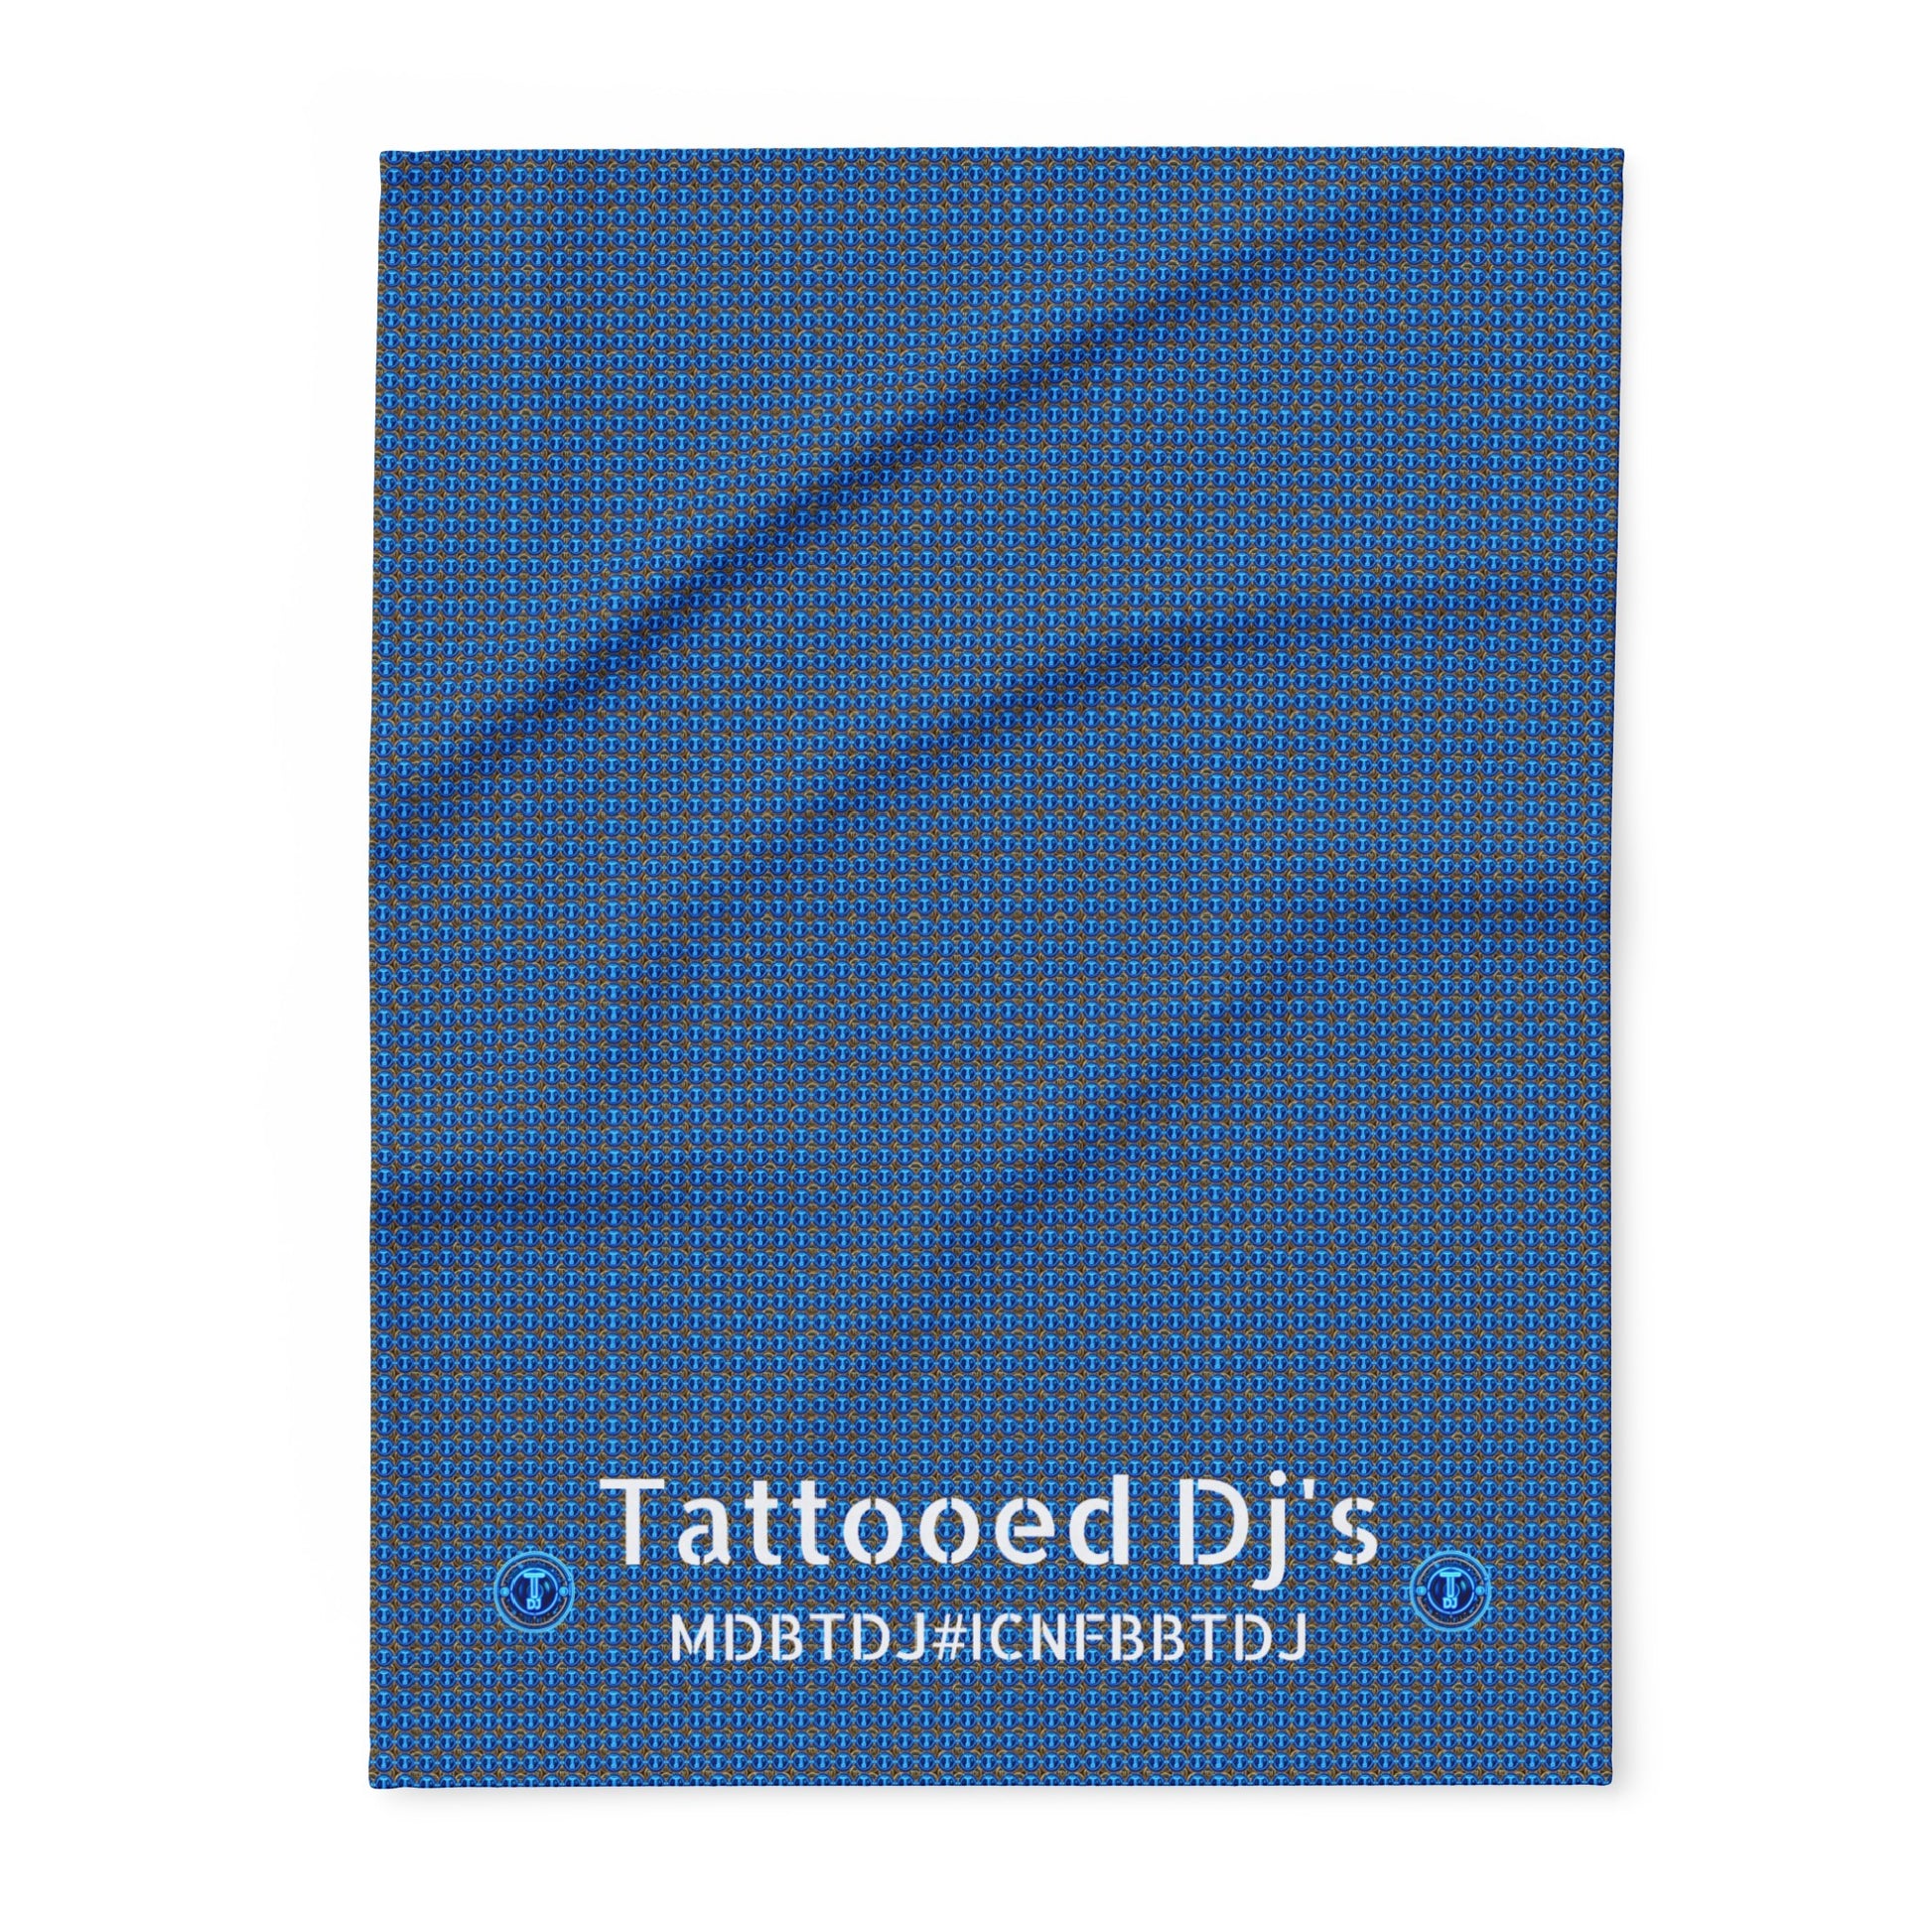 MDBTDJ#ICNFBBTDJ Fleece Blanket Tattooed Dj's Limited Edition, Home Decor, Tattooed Djs Shop